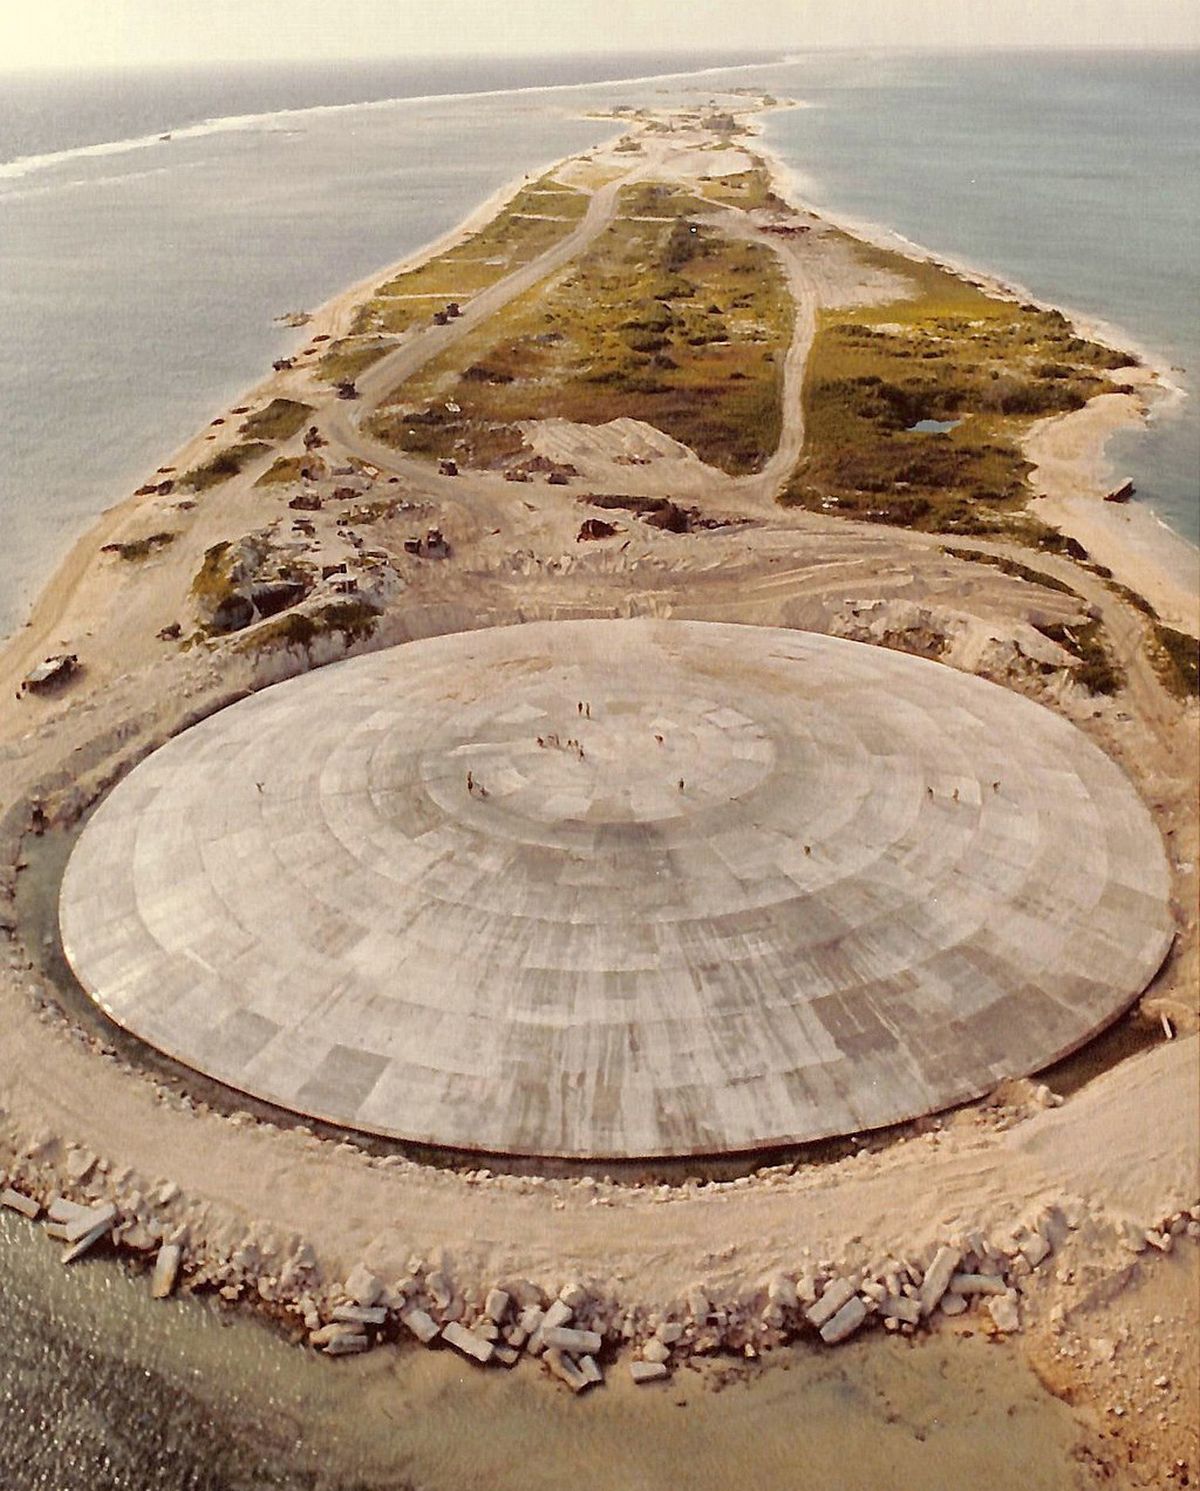 Le Runit Dome se fissure en raison de l'évolution des conditions de l'île, de la hausse des températures et du niveau de la mer.